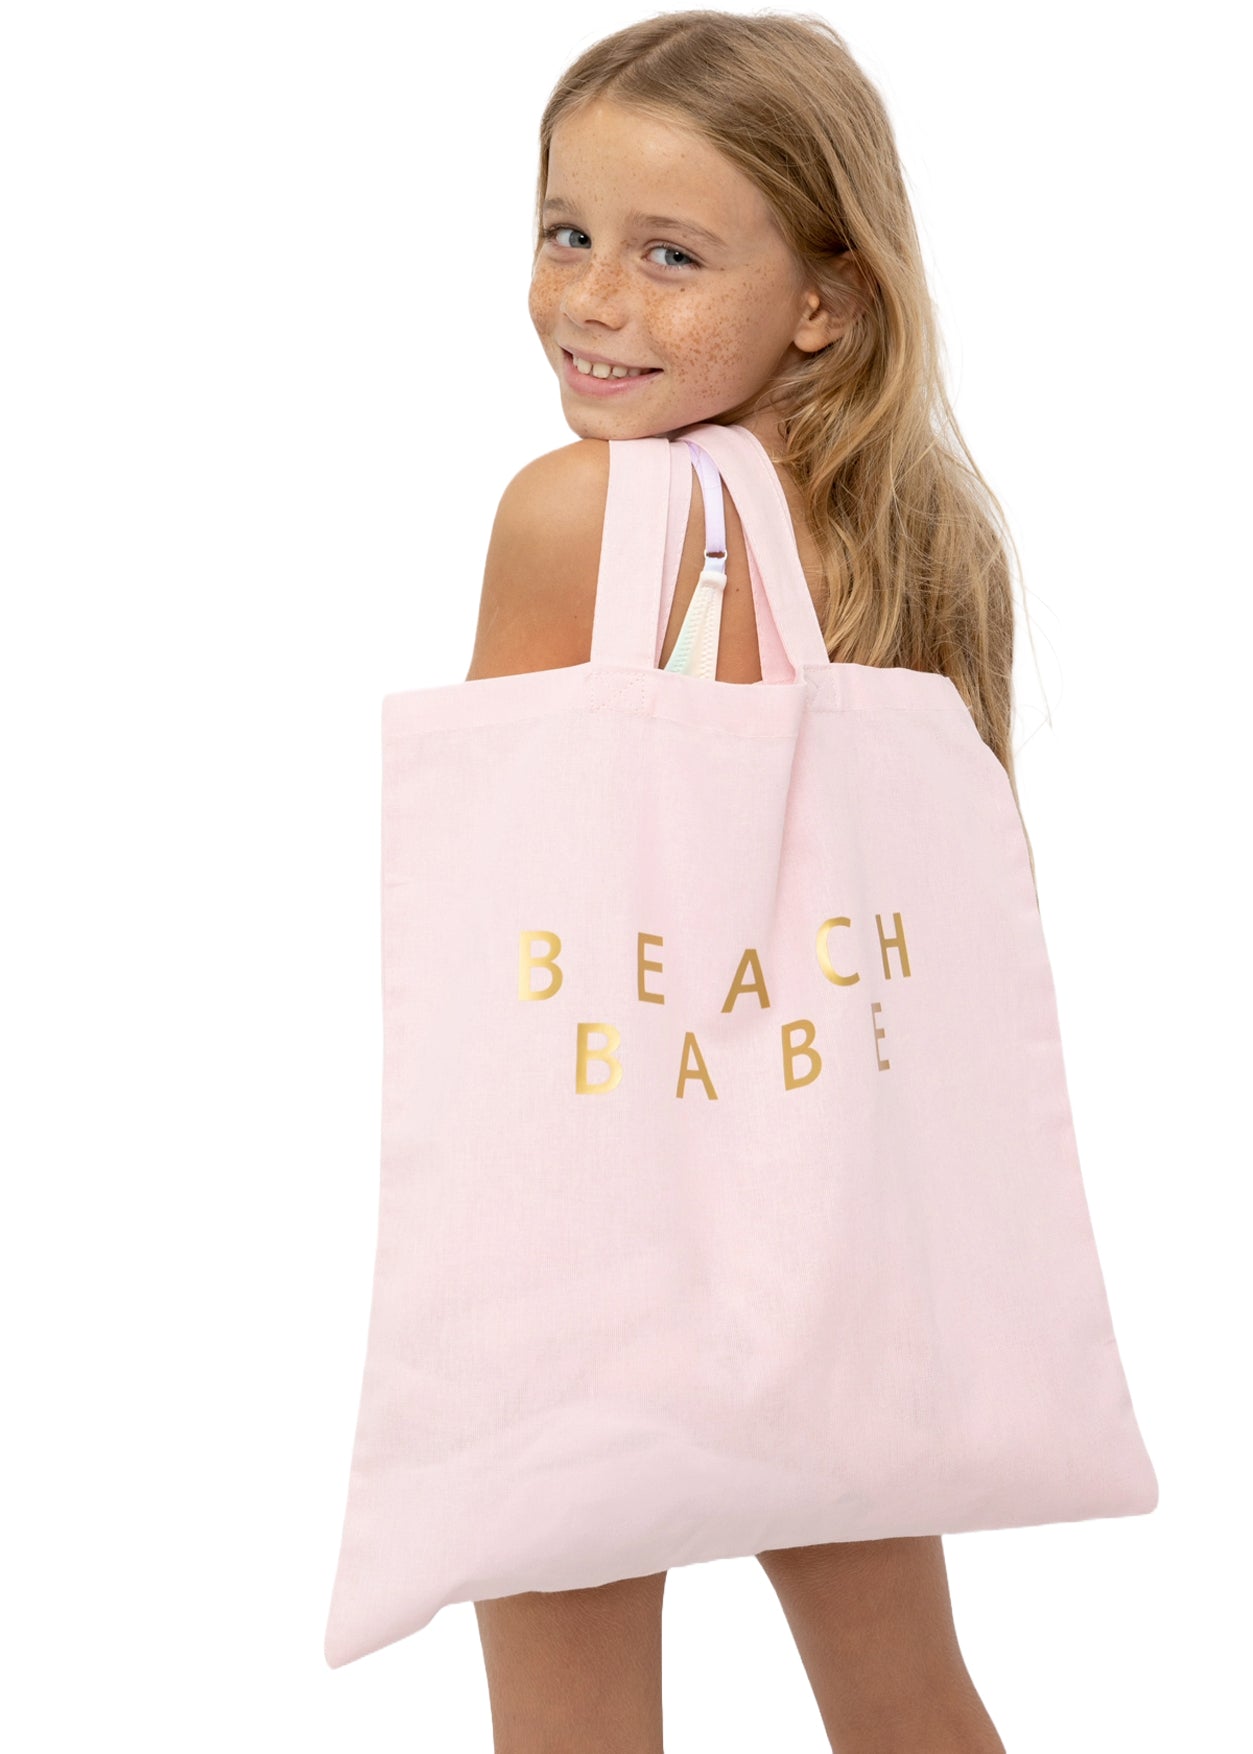 cute beach bags for girls